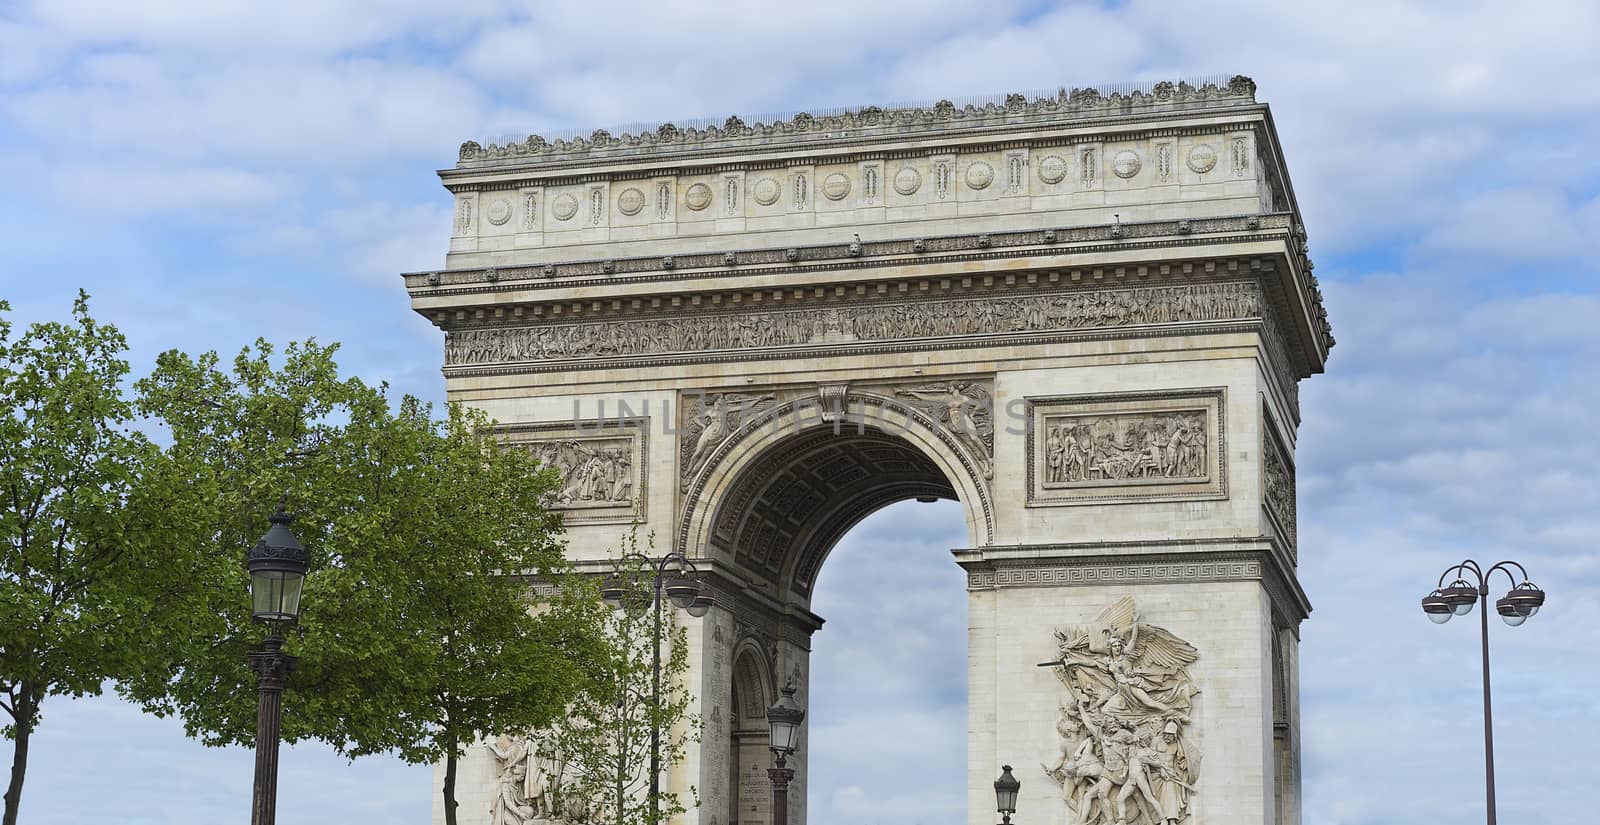 Arc de Triumphe monument popular tourist destination Paris with blue cloudy sky